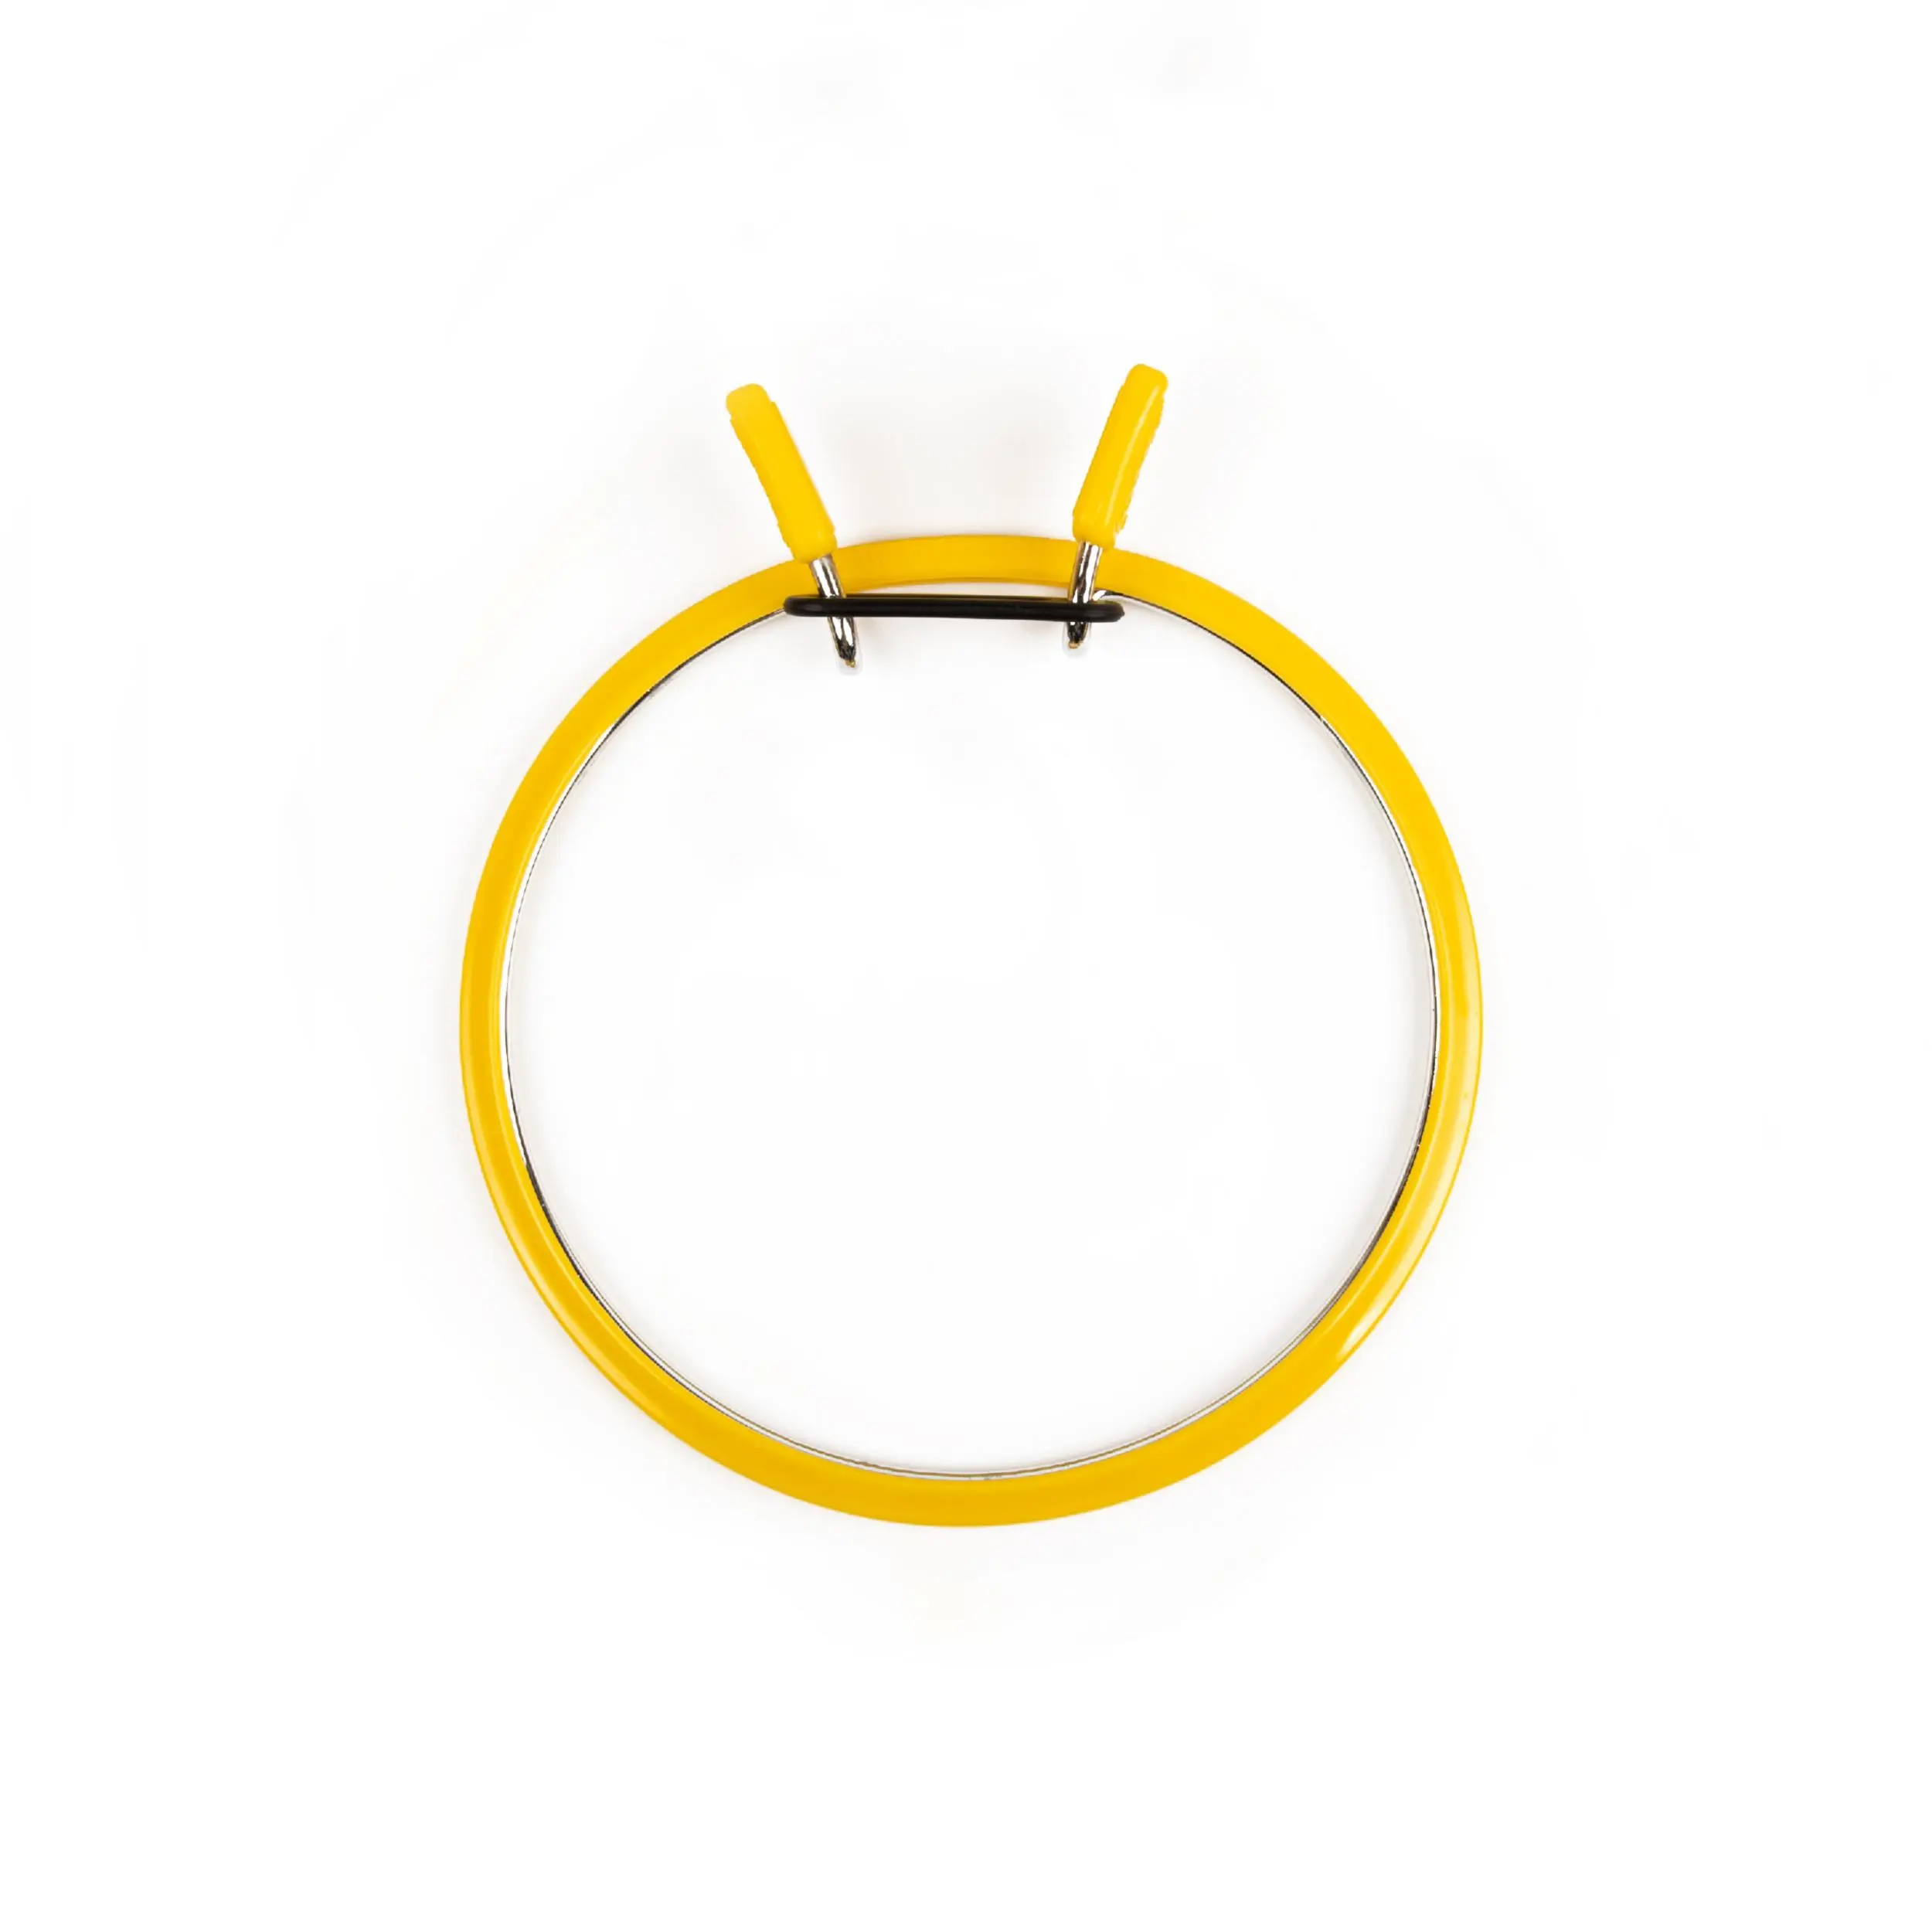 160-2/жовті Пяльці Nurge пружинні для вишивання та штопки, висота обідка 5мм, діаметр 126мм